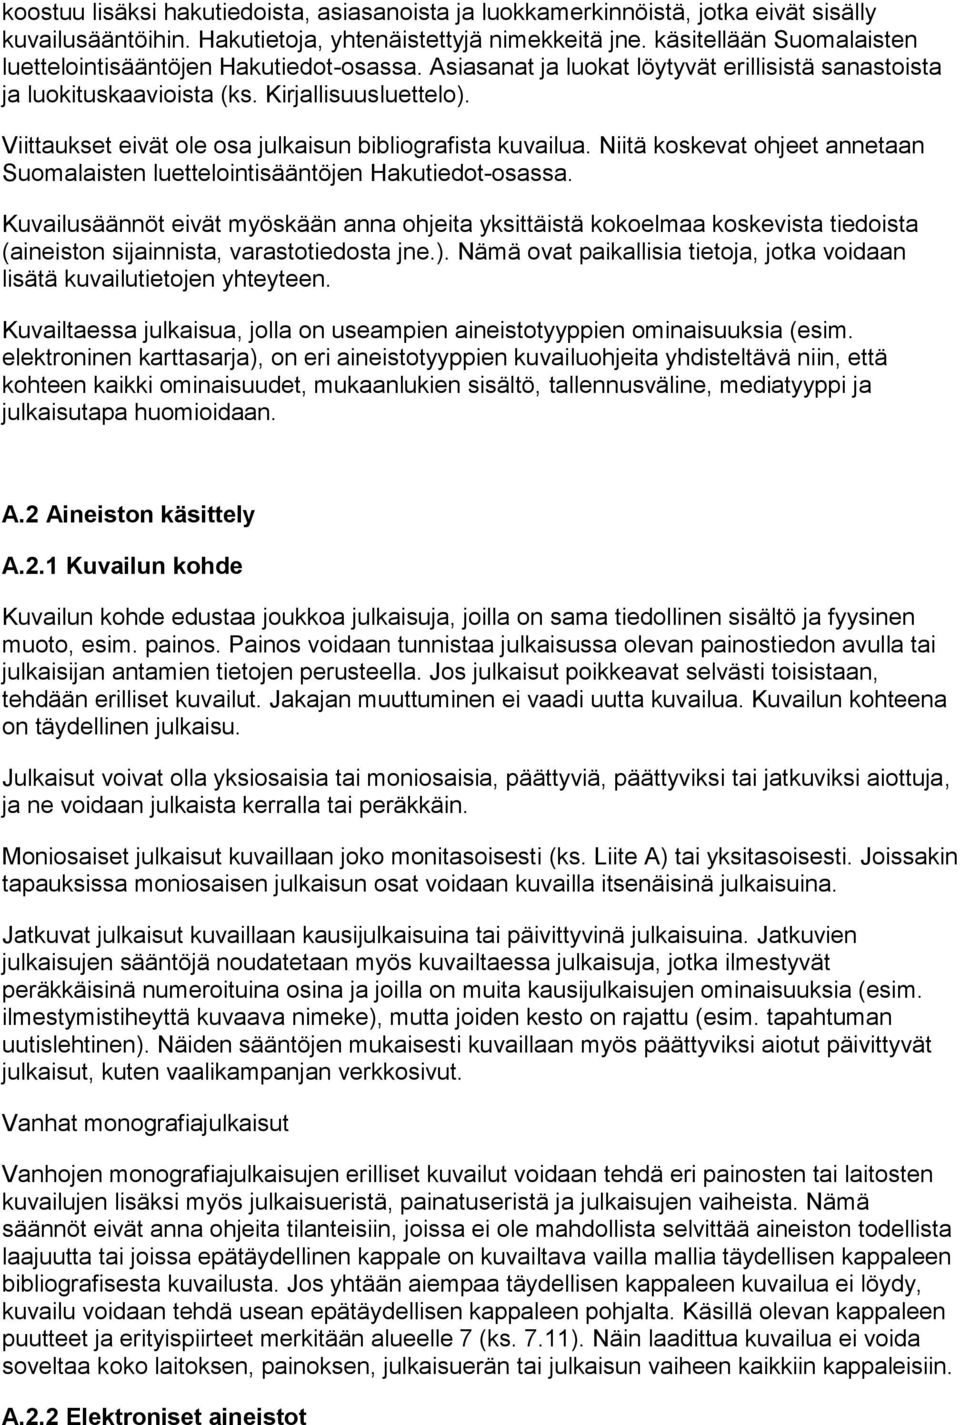 Viittaukset eivät ole osa julkaisun bibliografista kuvailua. Niitä koskevat ohjeet annetaan Suomalaisten luettelointisääntöjen Hakutiedot-osassa.